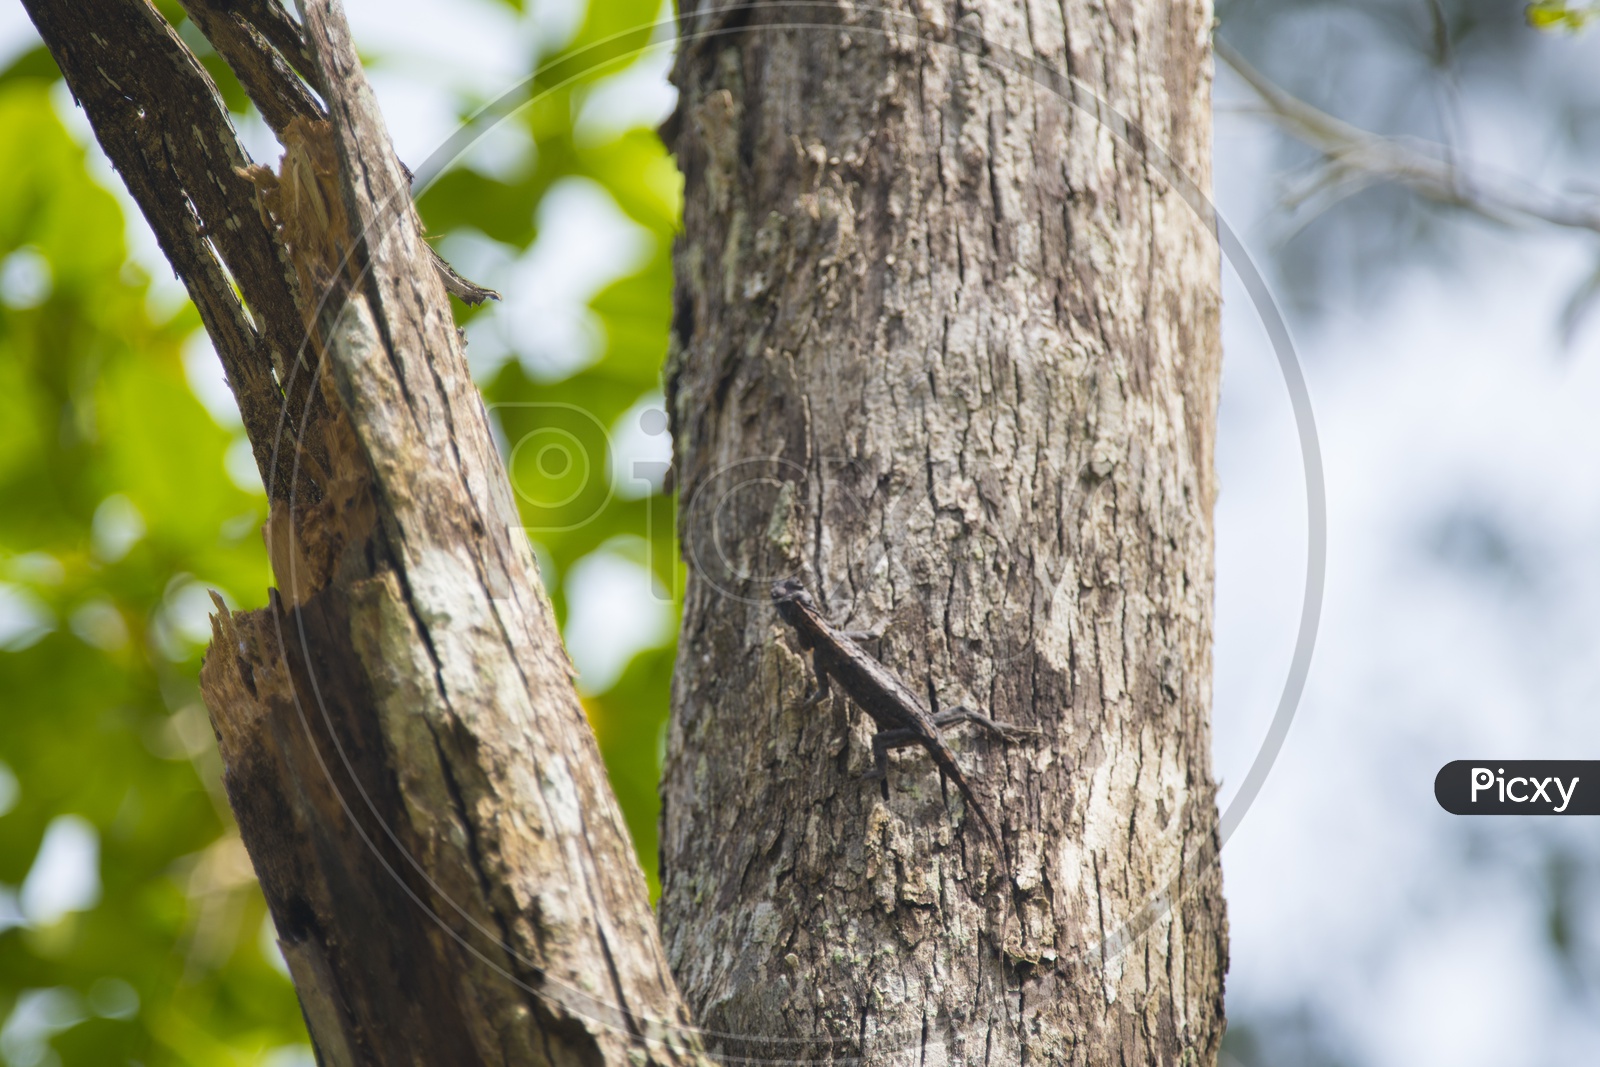 Orange-winged Flying Lizard on a tree trunk